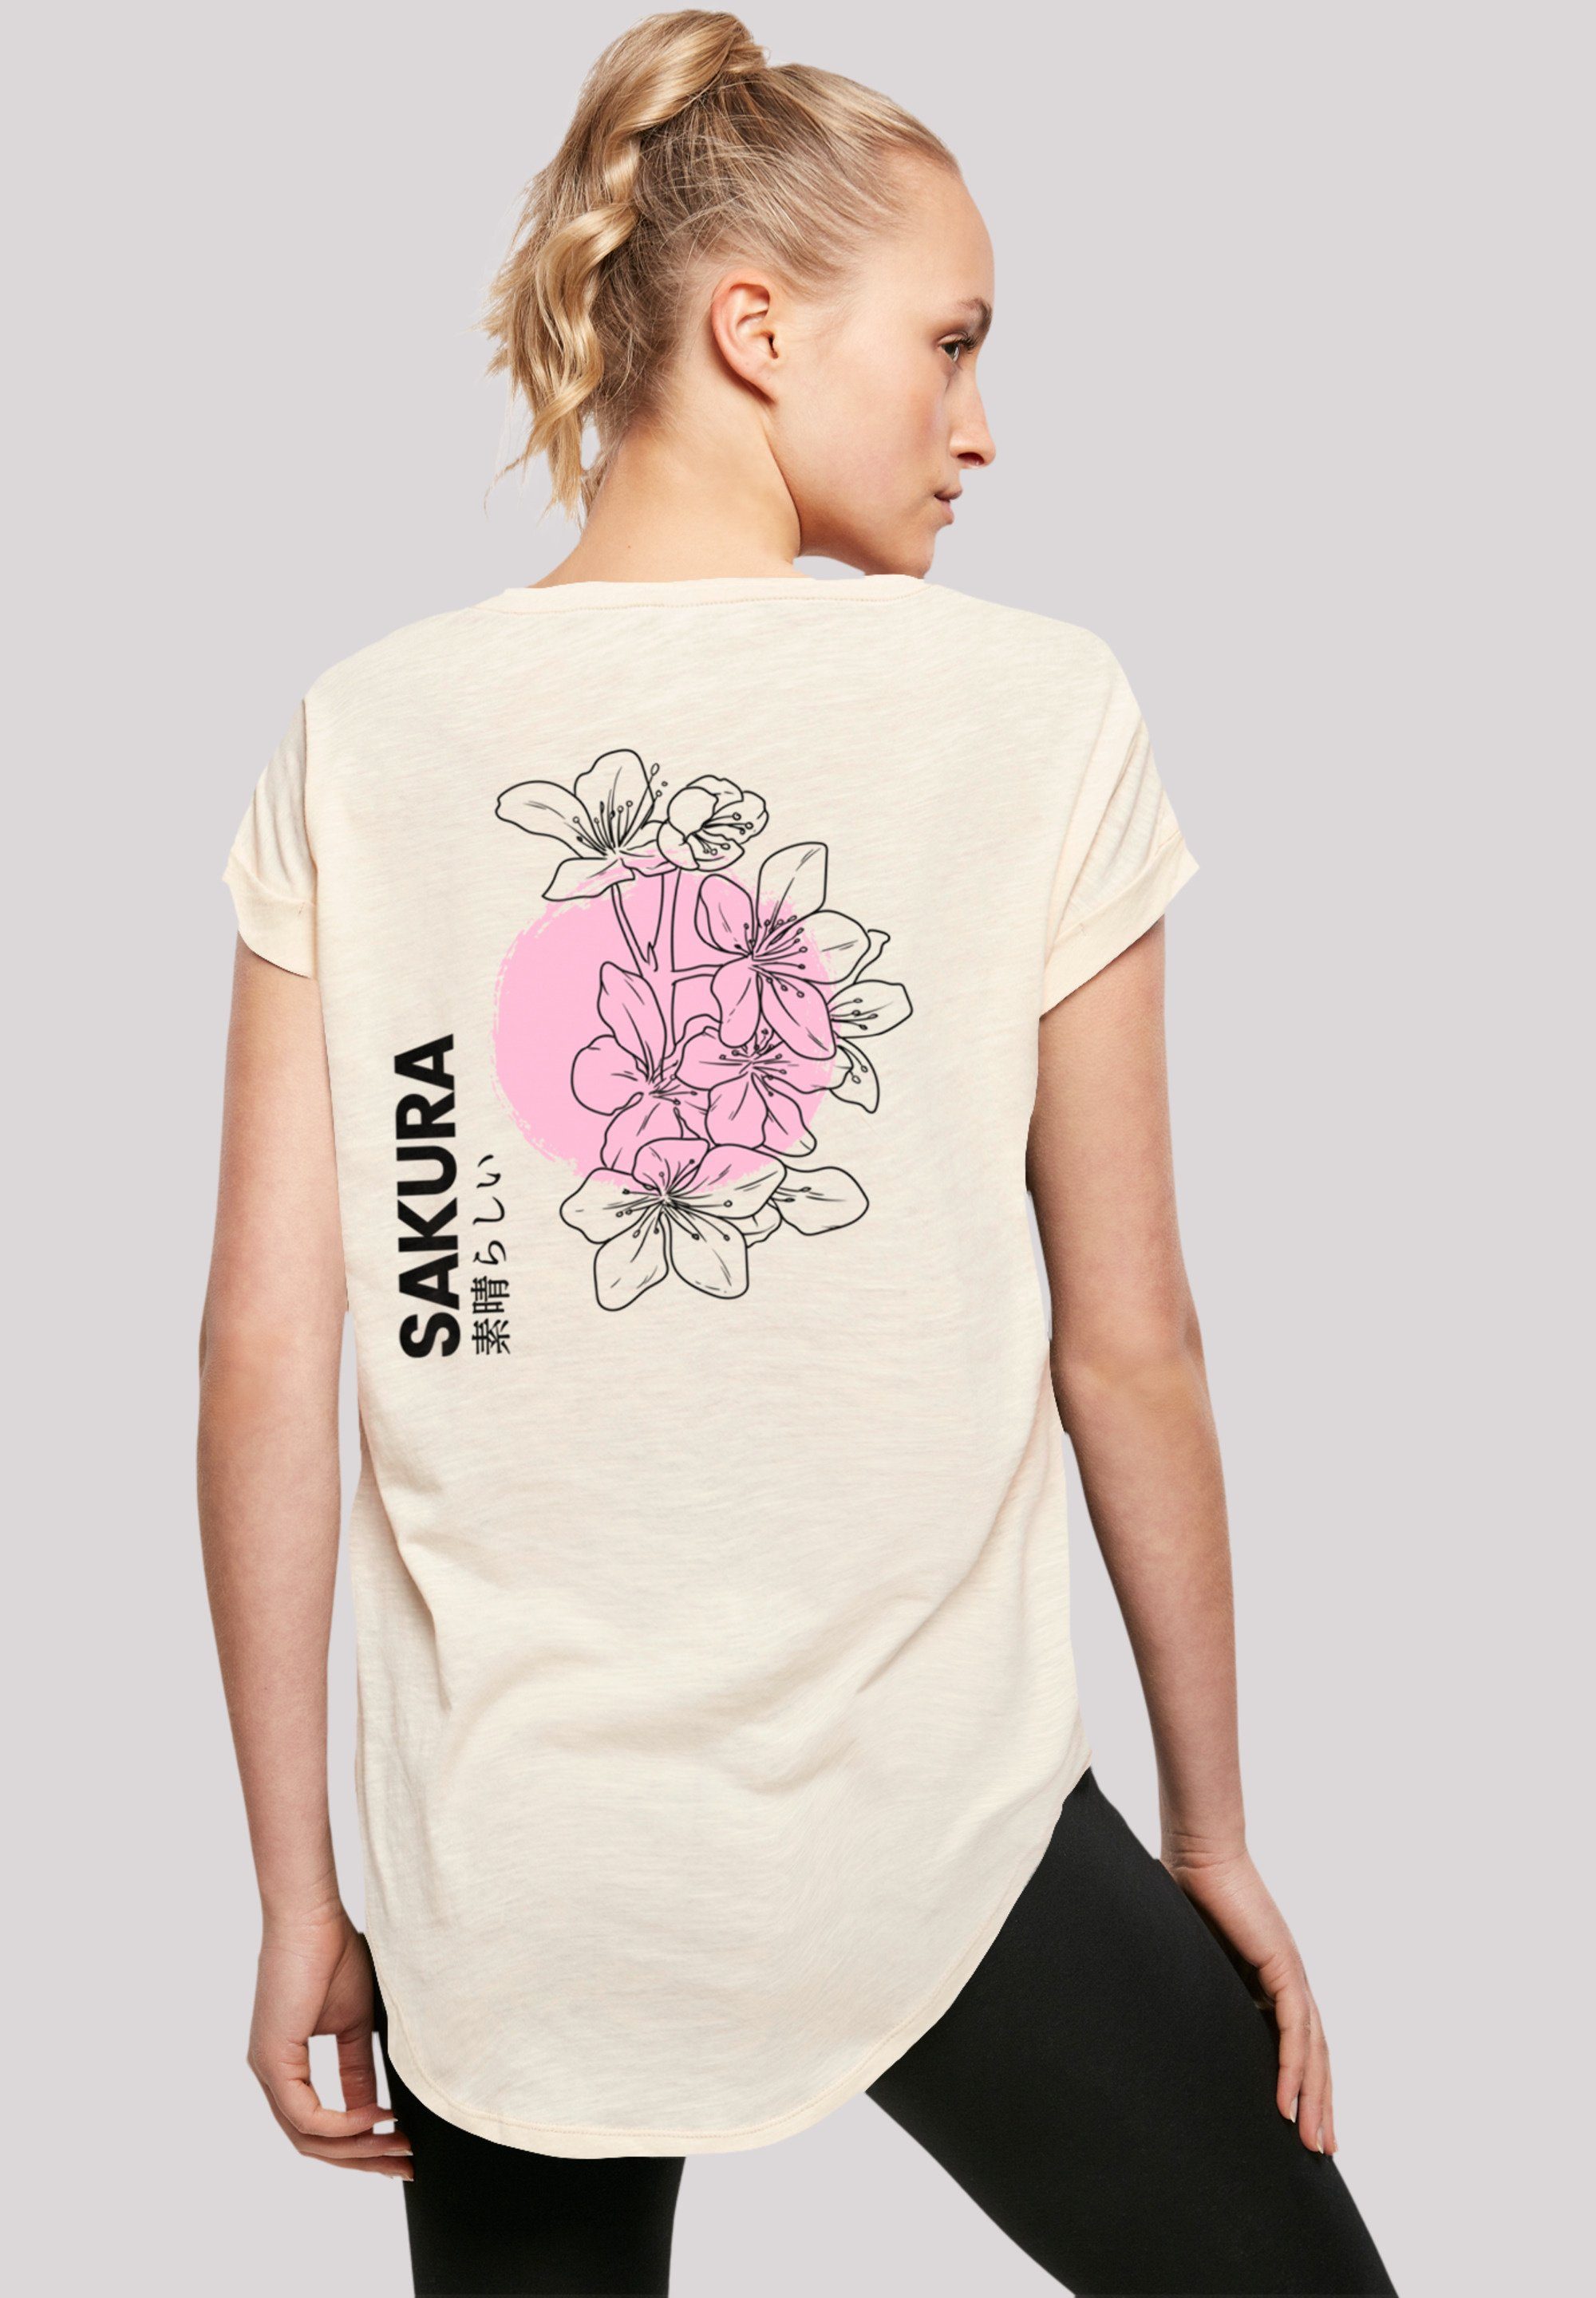 F4NT4STIC T-Shirt Sakura mit Japan Sehr Tragekomfort Baumwollstoff Grafik weicher Print, hohem